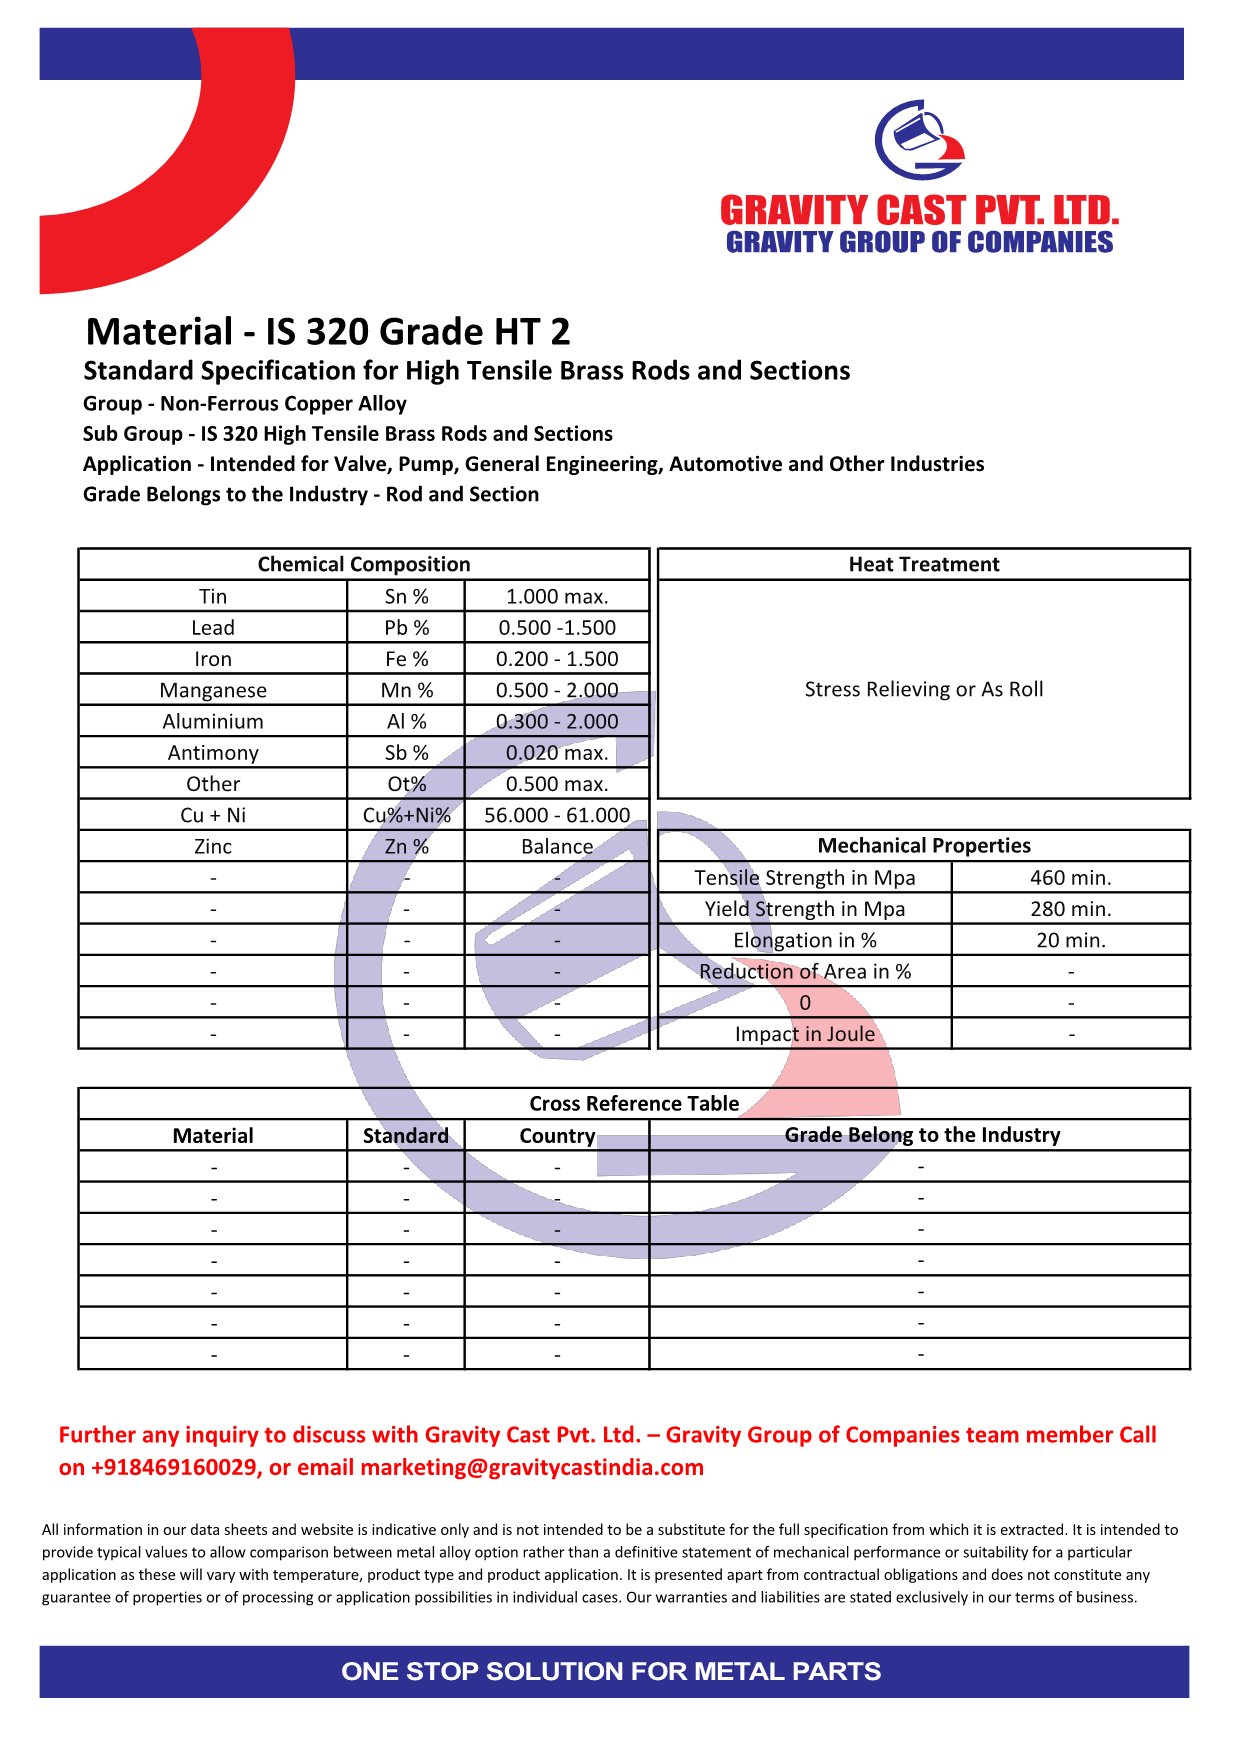 IS 320 Grade HT 2.pdf